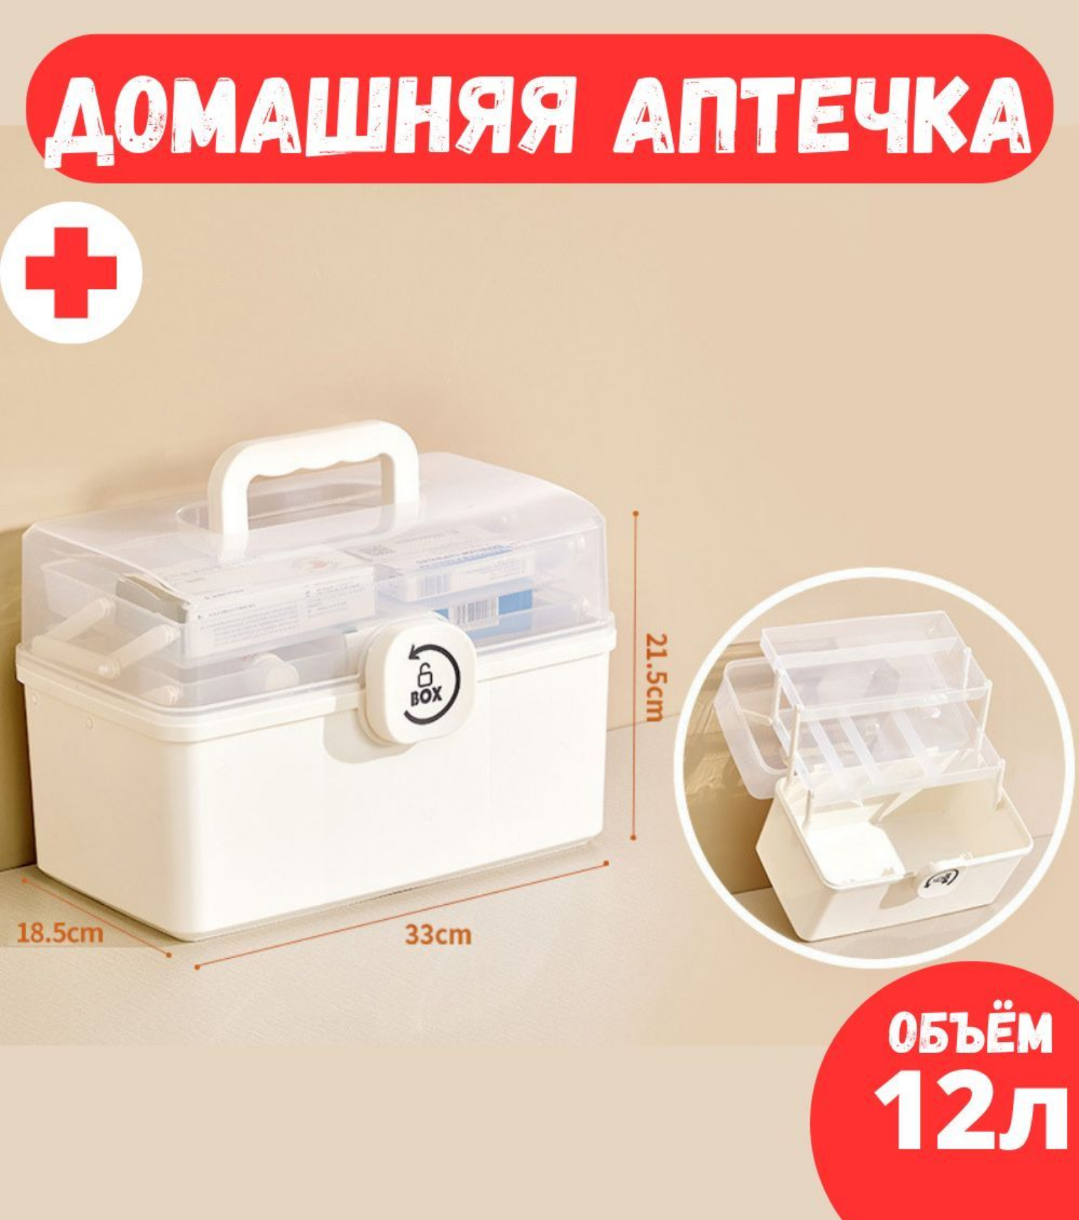 Органайзер для хранения лекарств, домашняя аптечка бокс для медикаментов три уровня ForAver, белый, 33х18,5х22.5см